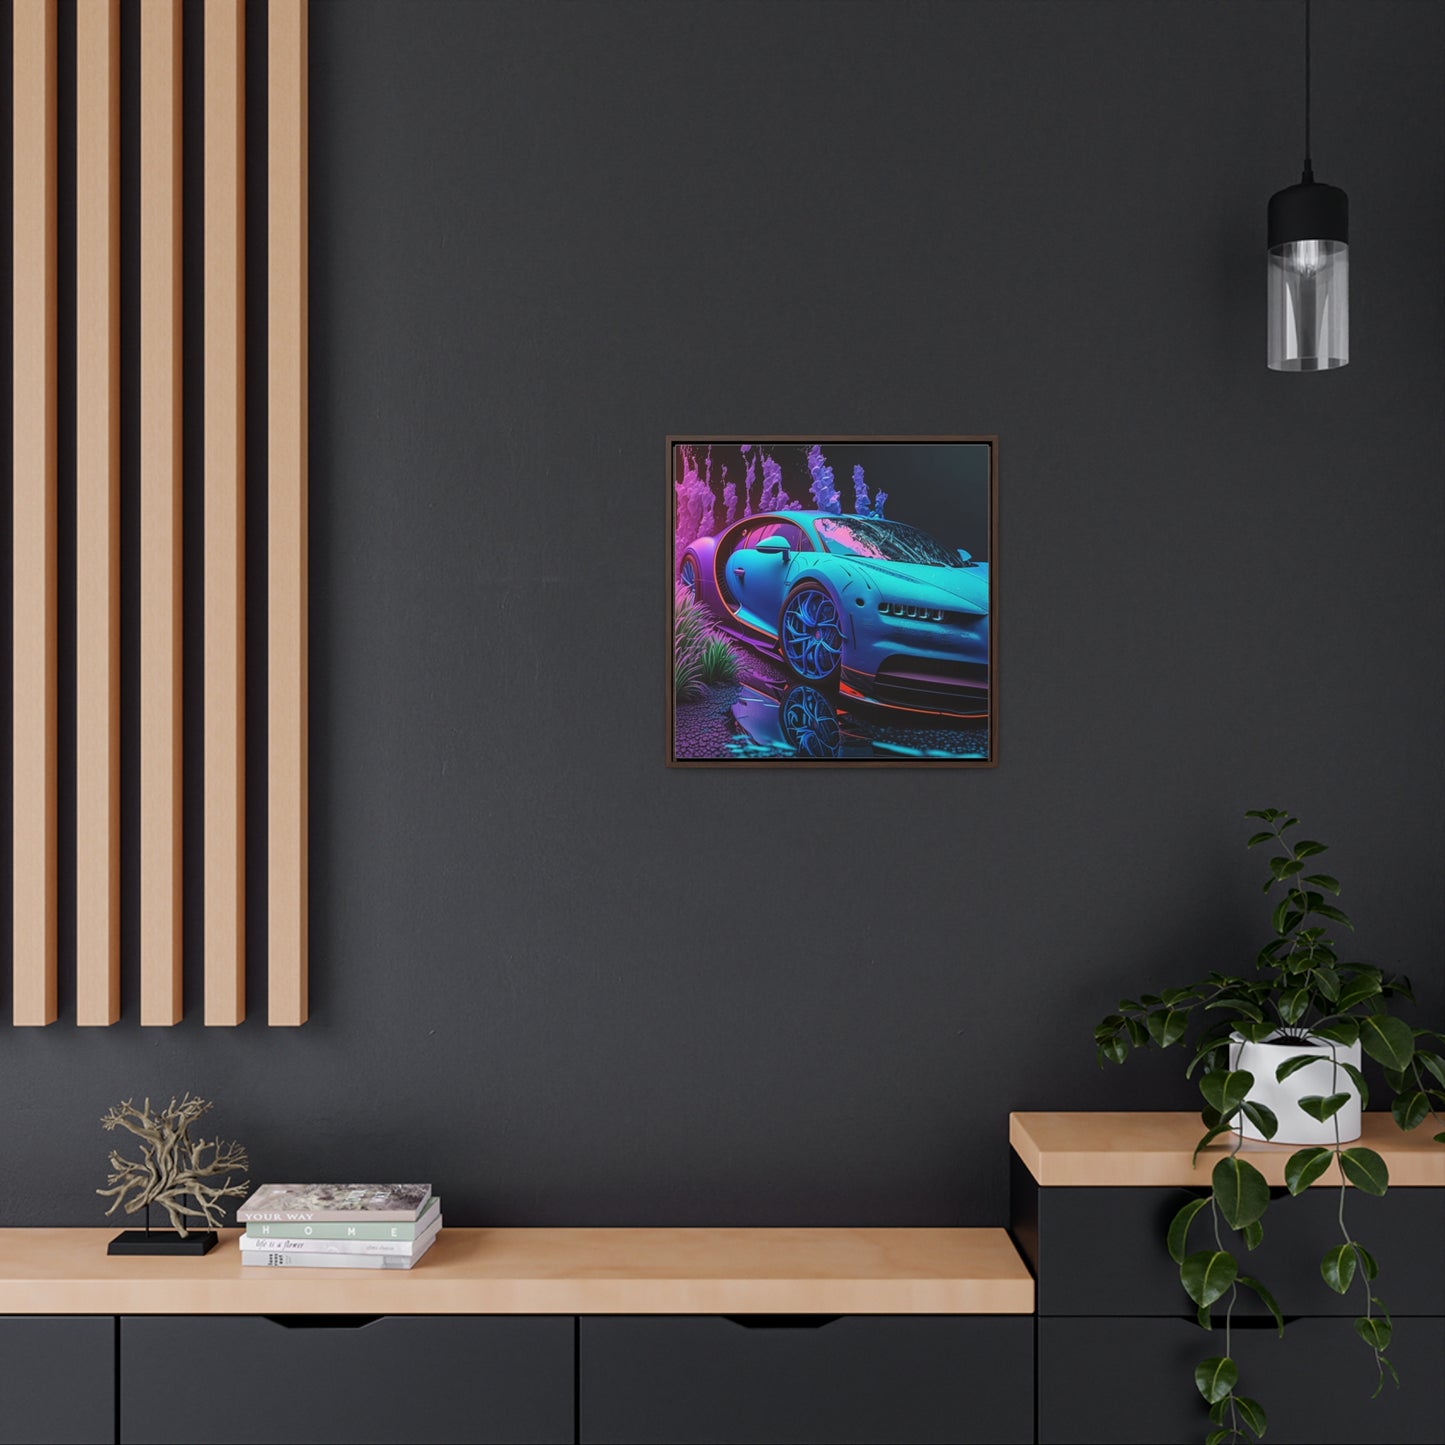 Gallery Canvas Wraps, Square Frame Bugatti Neon Chiron 2